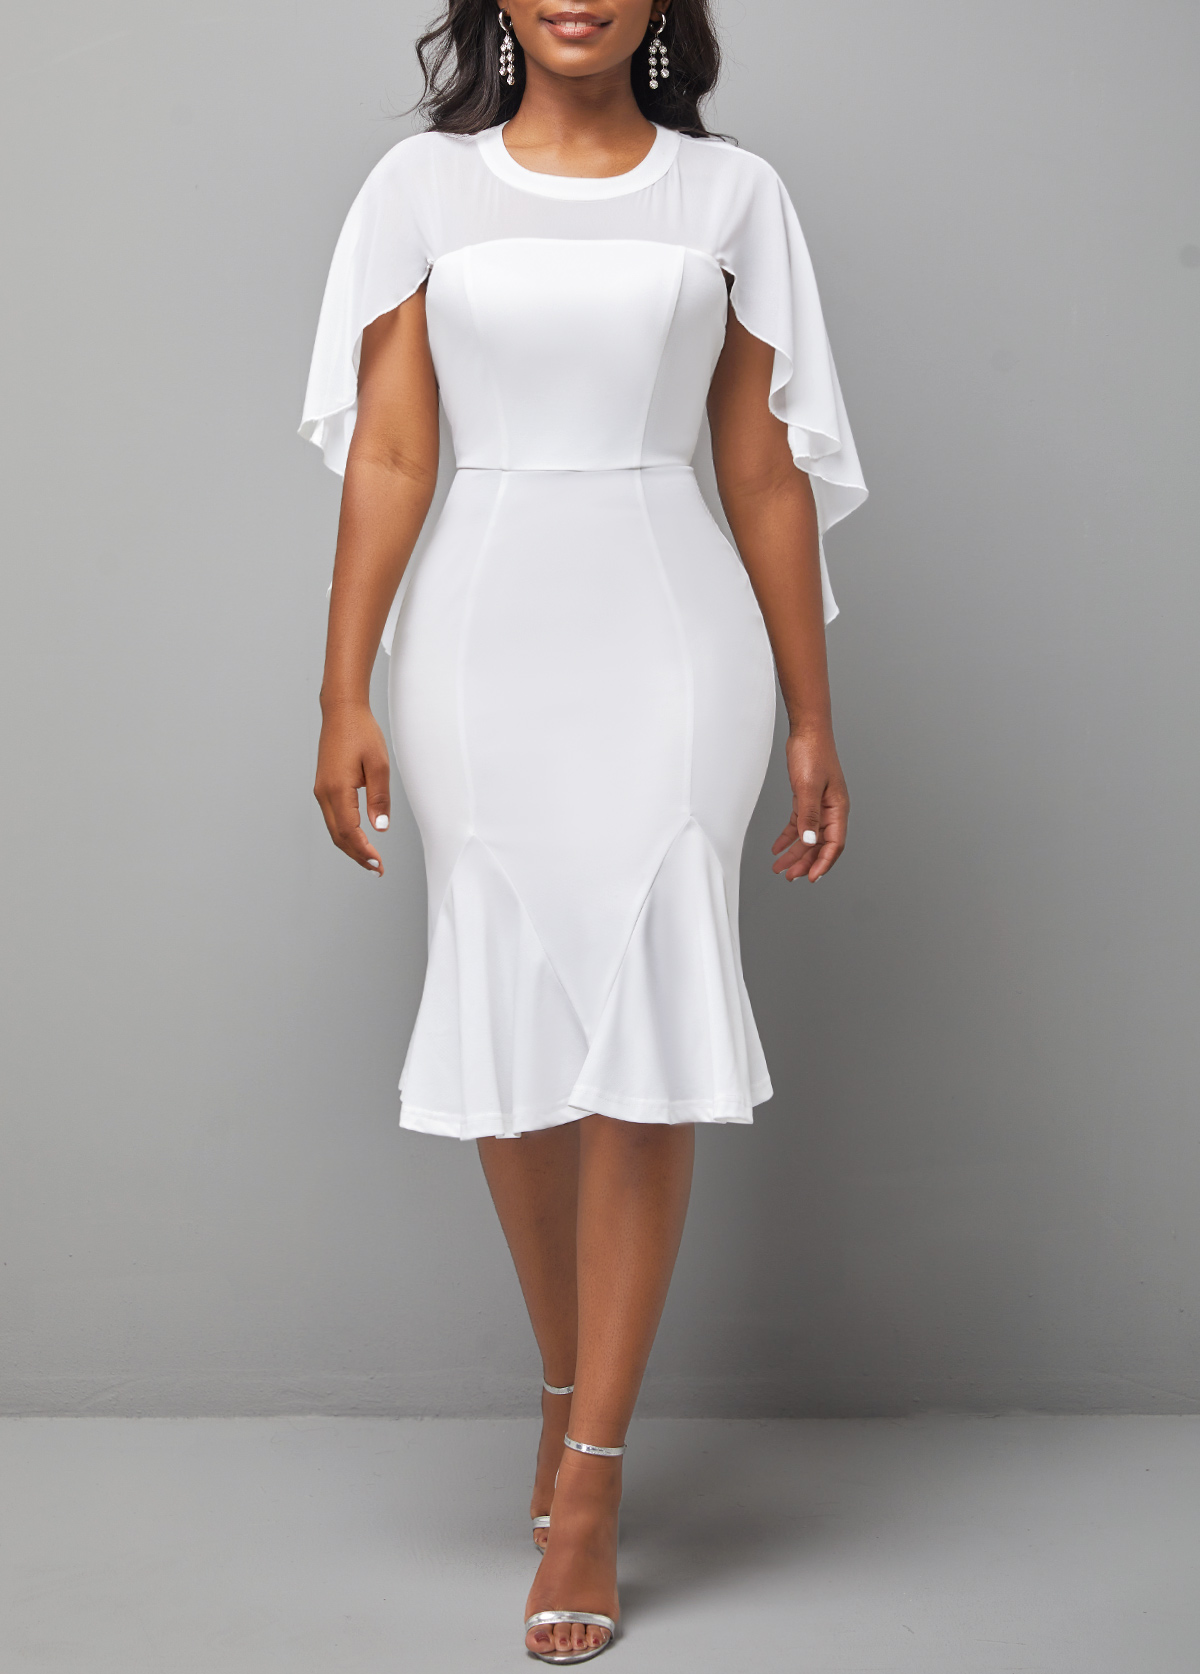 Fabric Stitching White Round Neck Dress